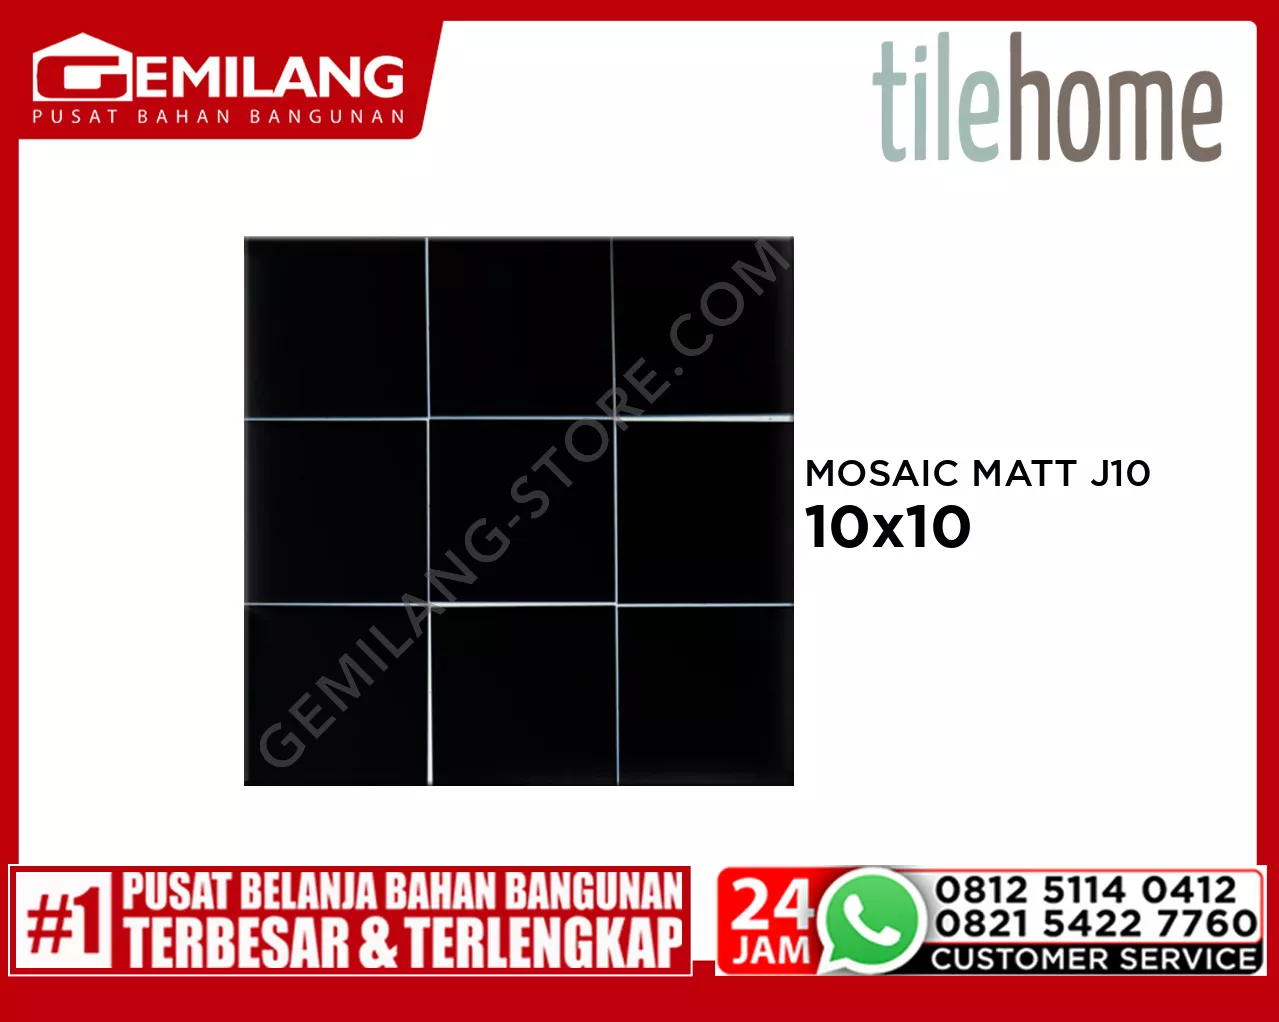 TILEHOME MOSAIC MATT J10 W108M 10cm x 10cm